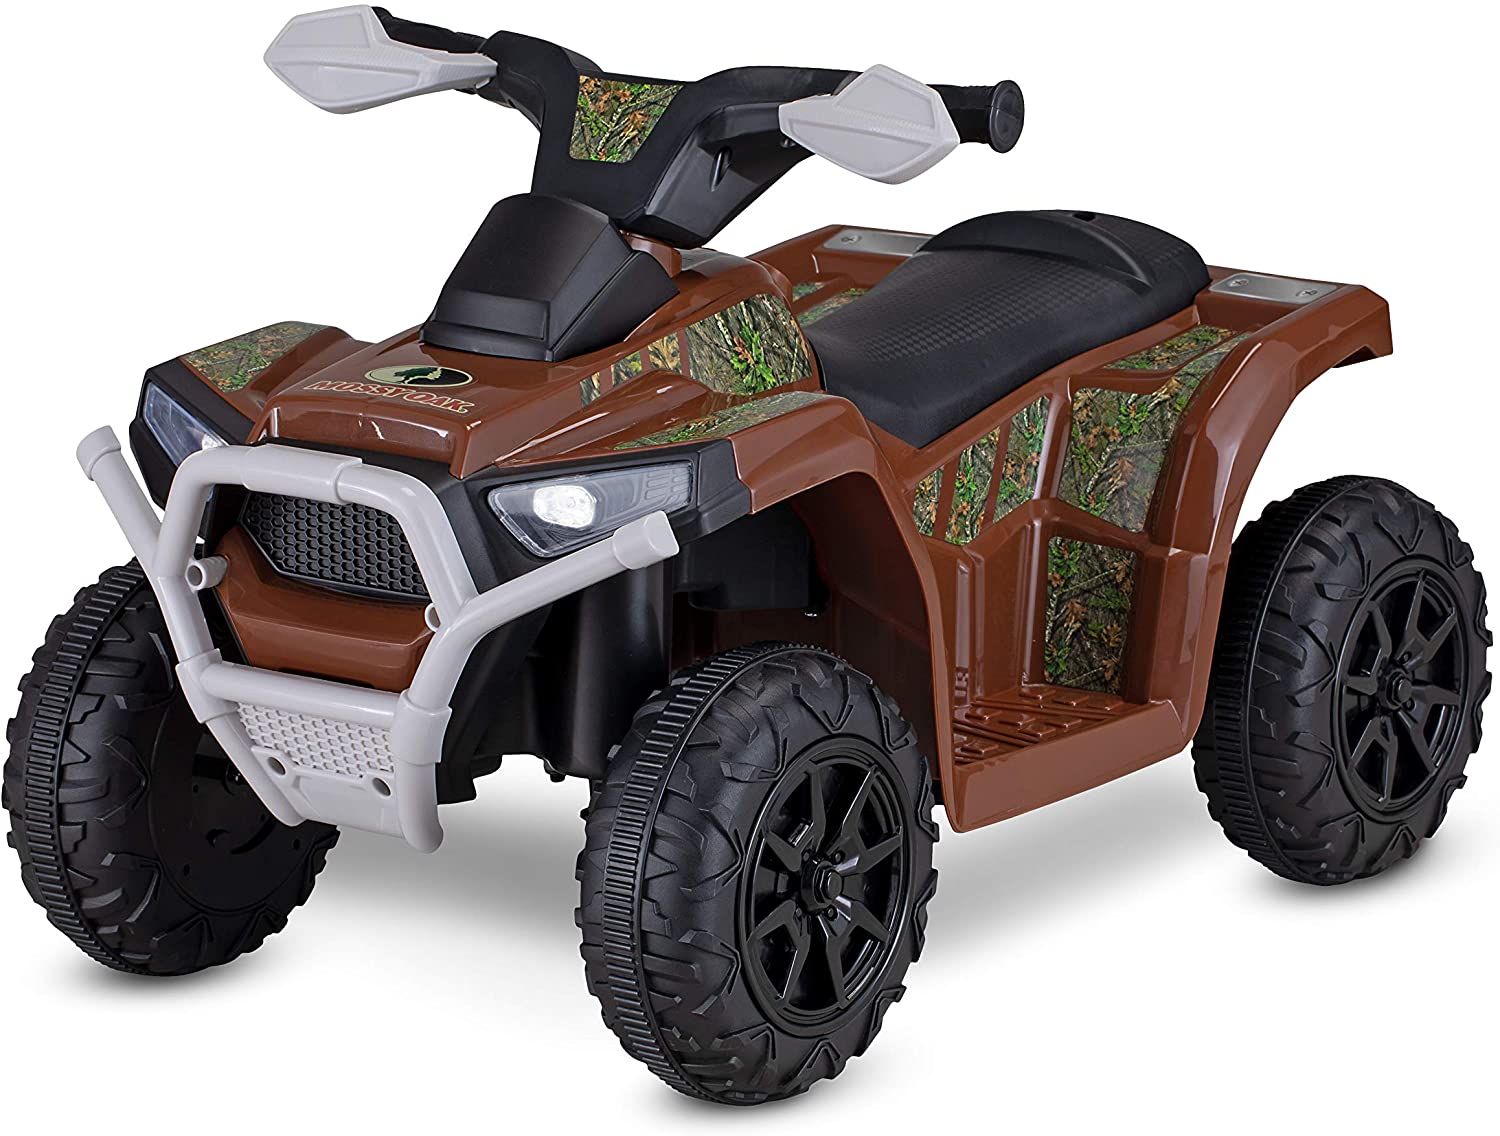 電動自動車 電動乗り物 子供用 バギー Kid Trax MOSSY OAK Electric Ride On Toy 乗り物 おもちゃ【送料無料】【代引不可】【あす楽不可】